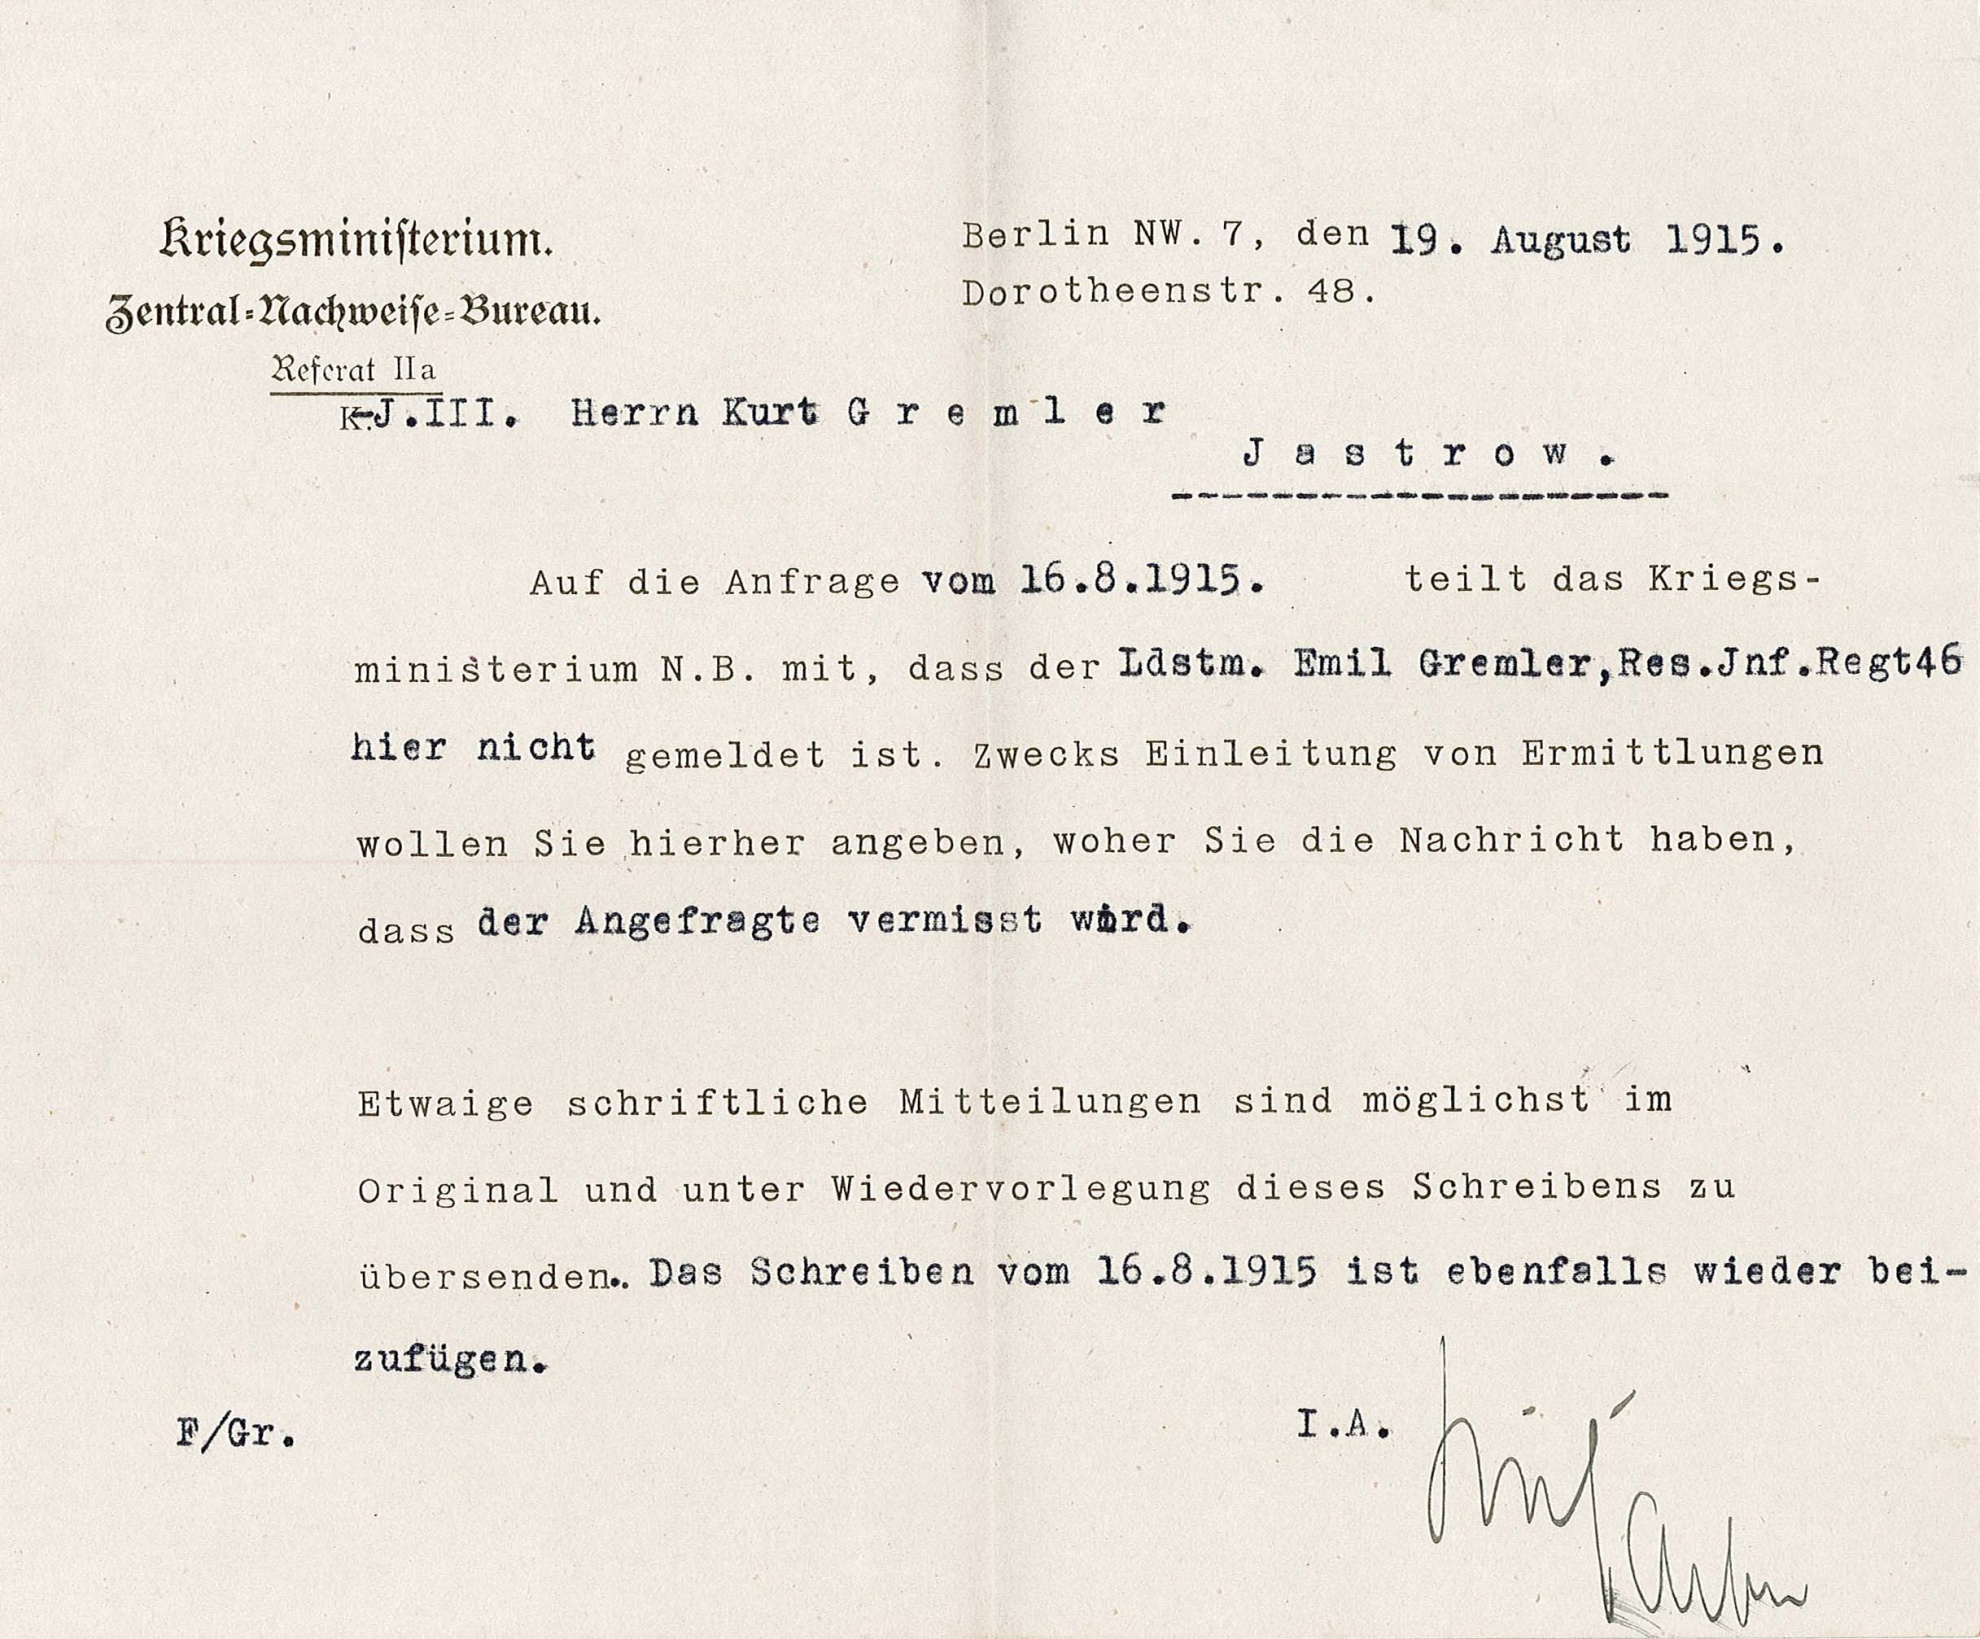 Informationsschreiben (Antwort) des Kriegsministeriums bezüglich Vermisstenmeldung von Emil Gremler an Kurt Gremler (Museum Wolmirstedt RR-F)